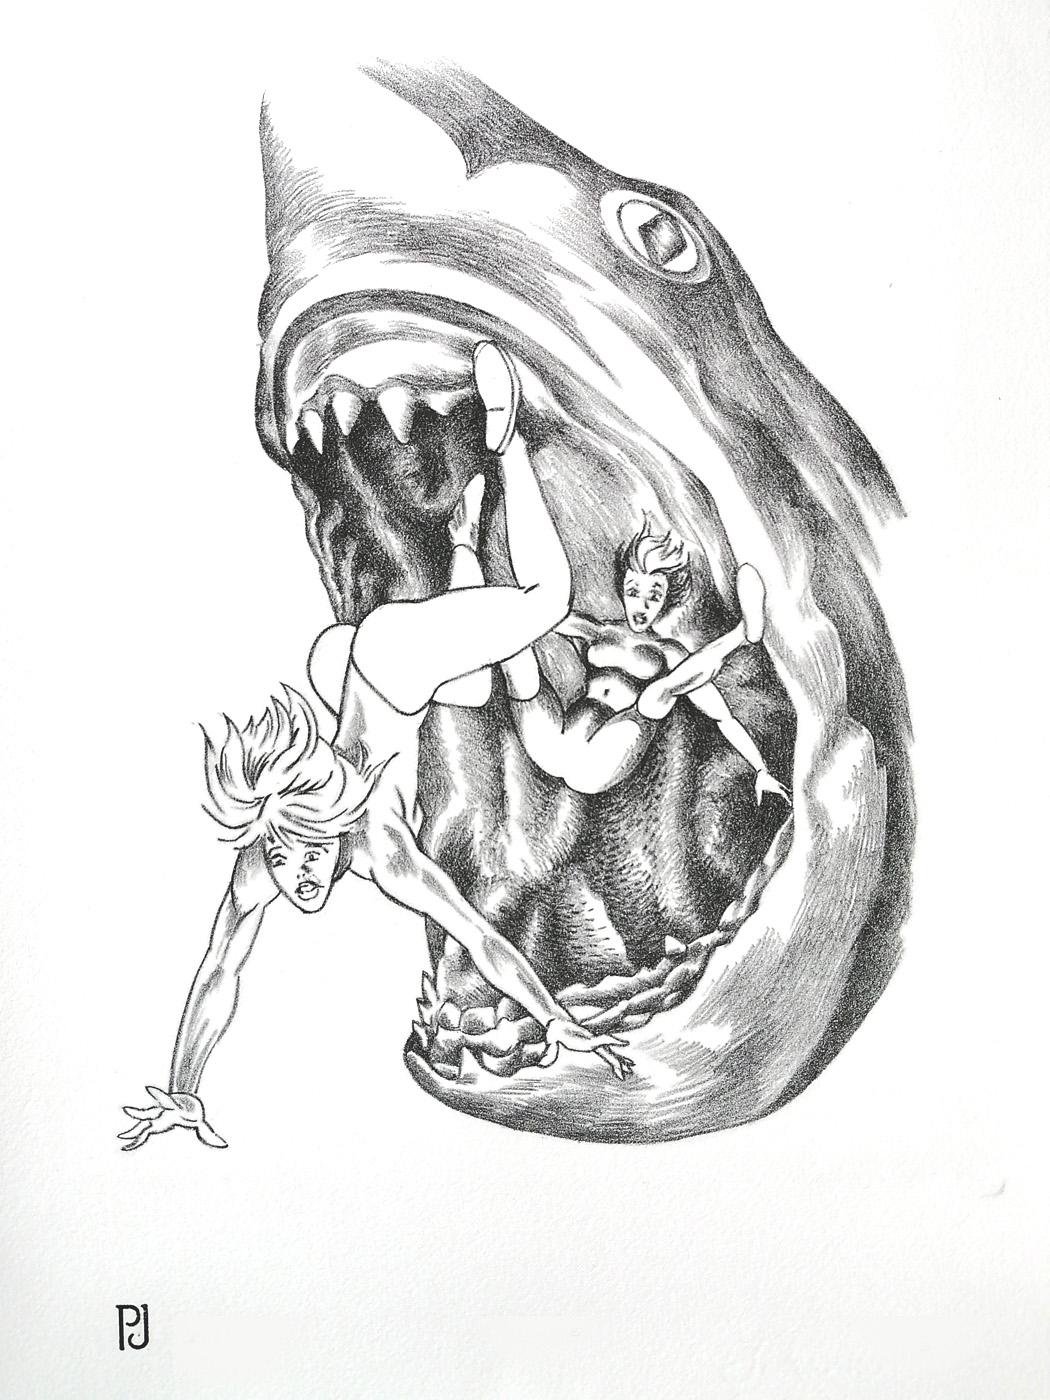 Impression lithographique / encre noire imprimée sur papier JOHANOT 240gr.
Cette version emprunte les codes de la bande dessinée, pour représenter un requin mangeur de femmes.

Références utilisées pour cette impression : Requin du film : "Les Dents